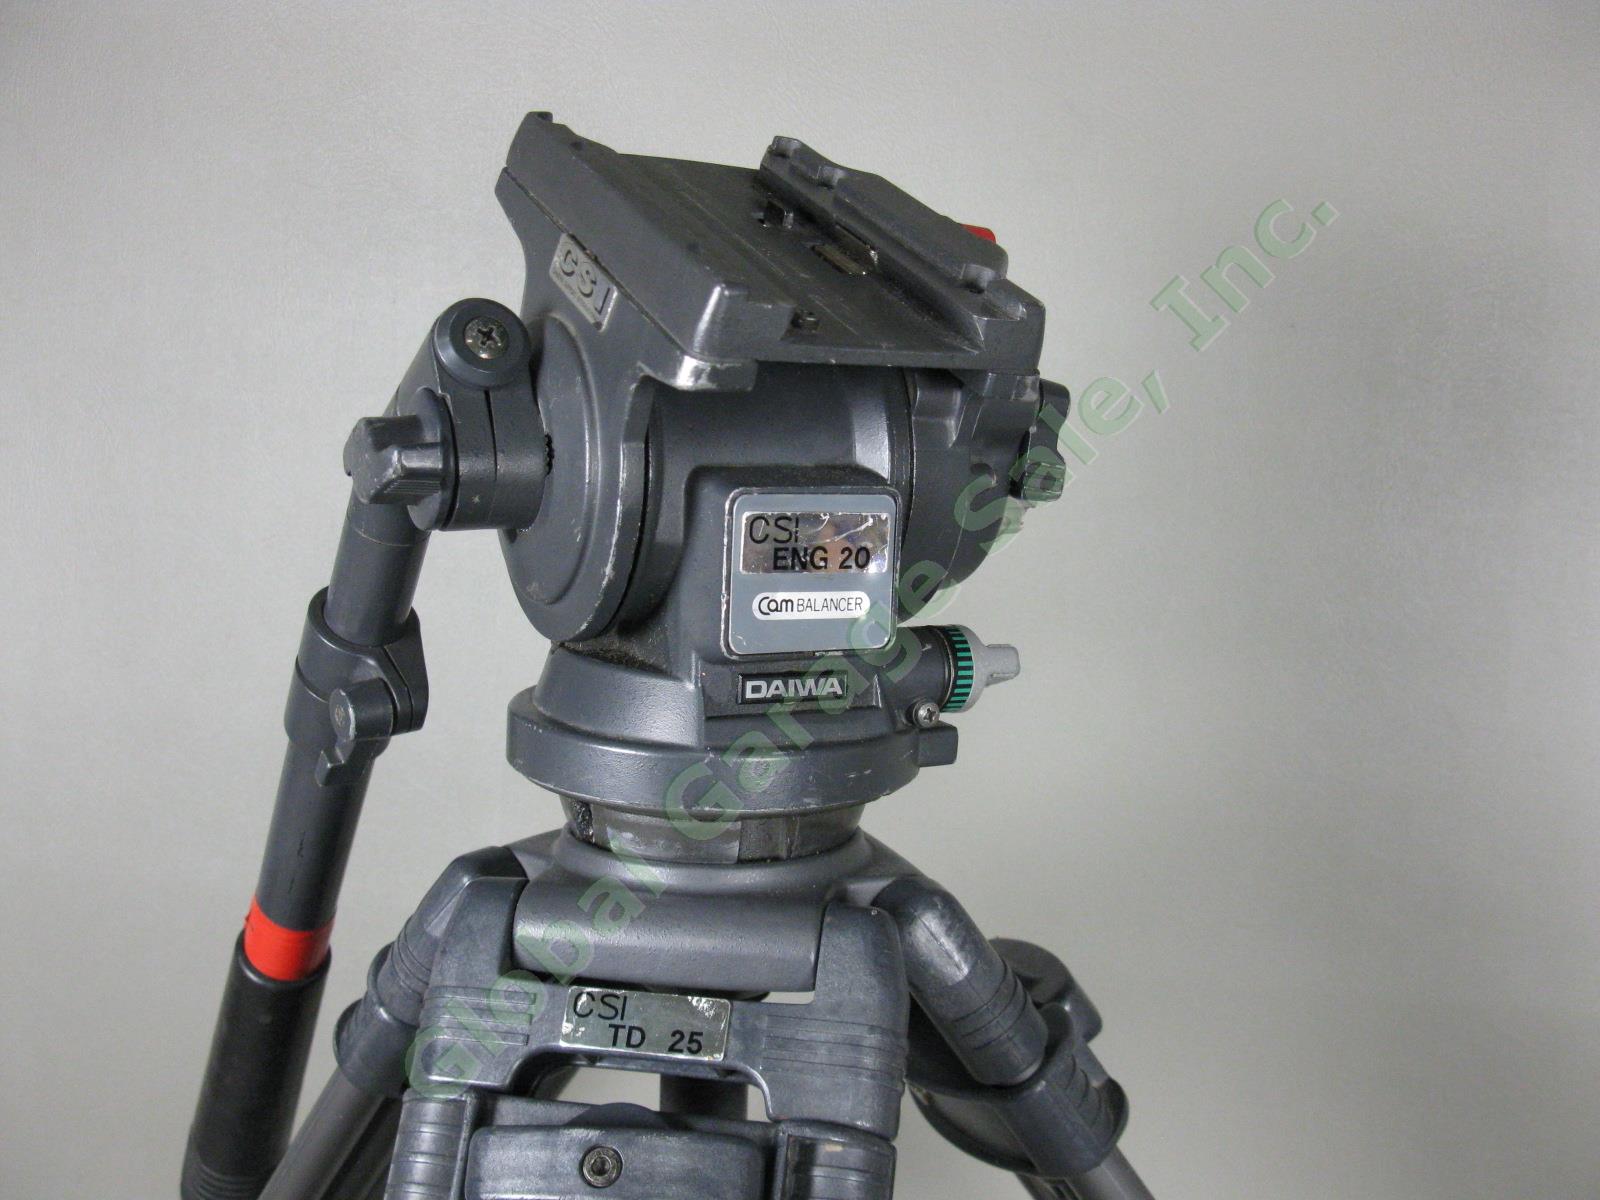 Daiwa CSI TD20 Tripod W/ ENG Fluid Head Video Cam Camera Camcorder Balancer Lot 2